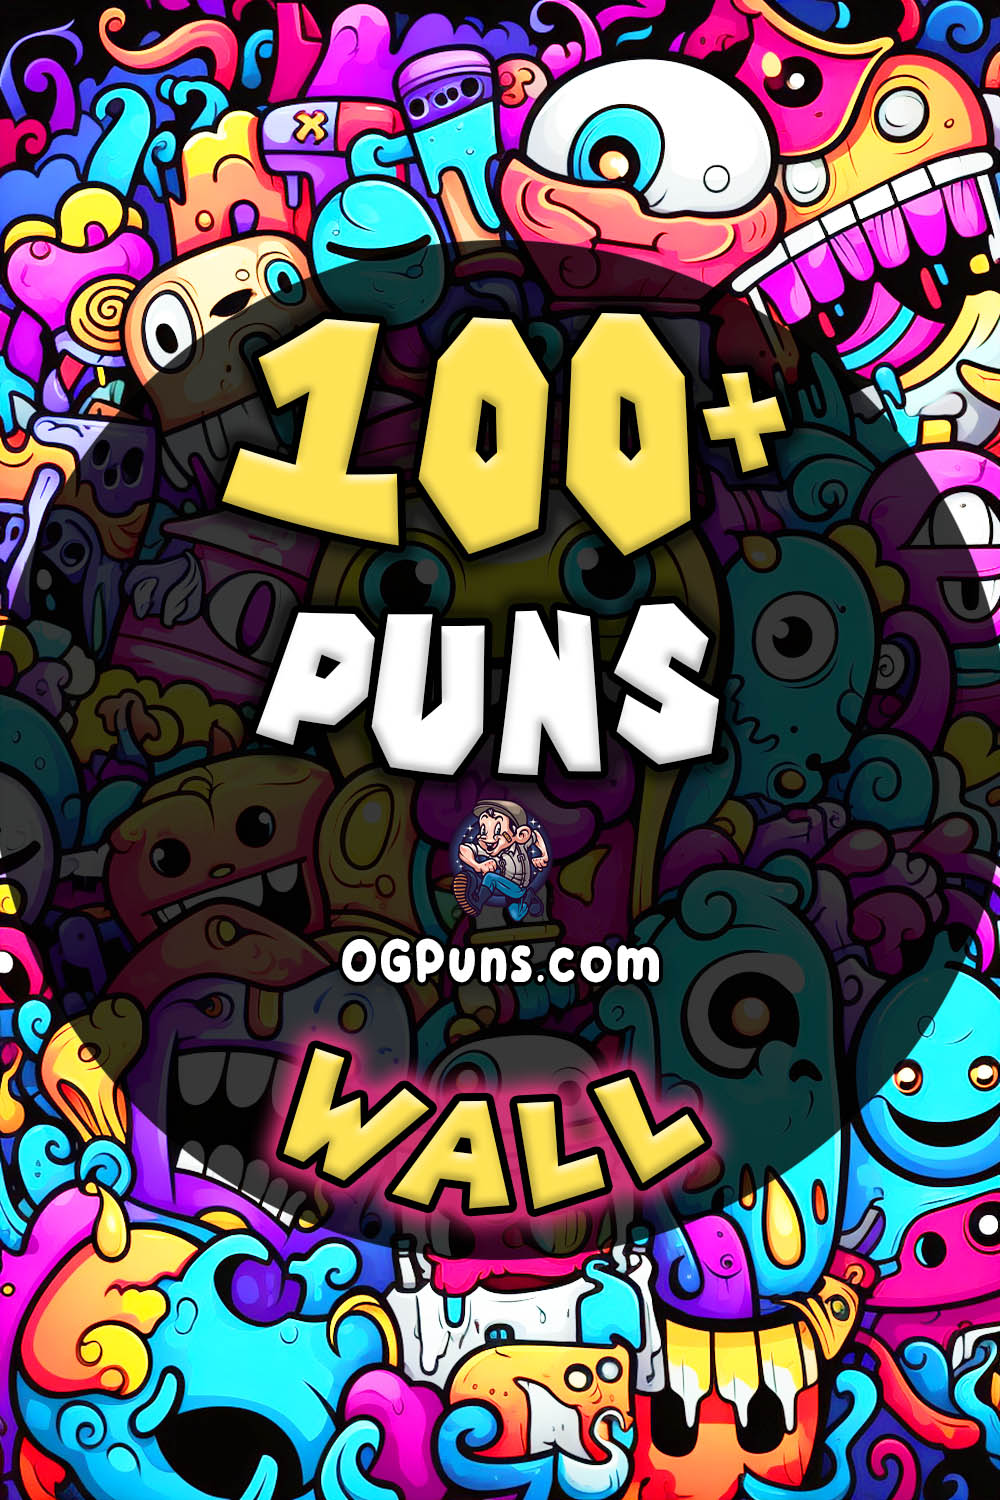 Pin a Wall puns